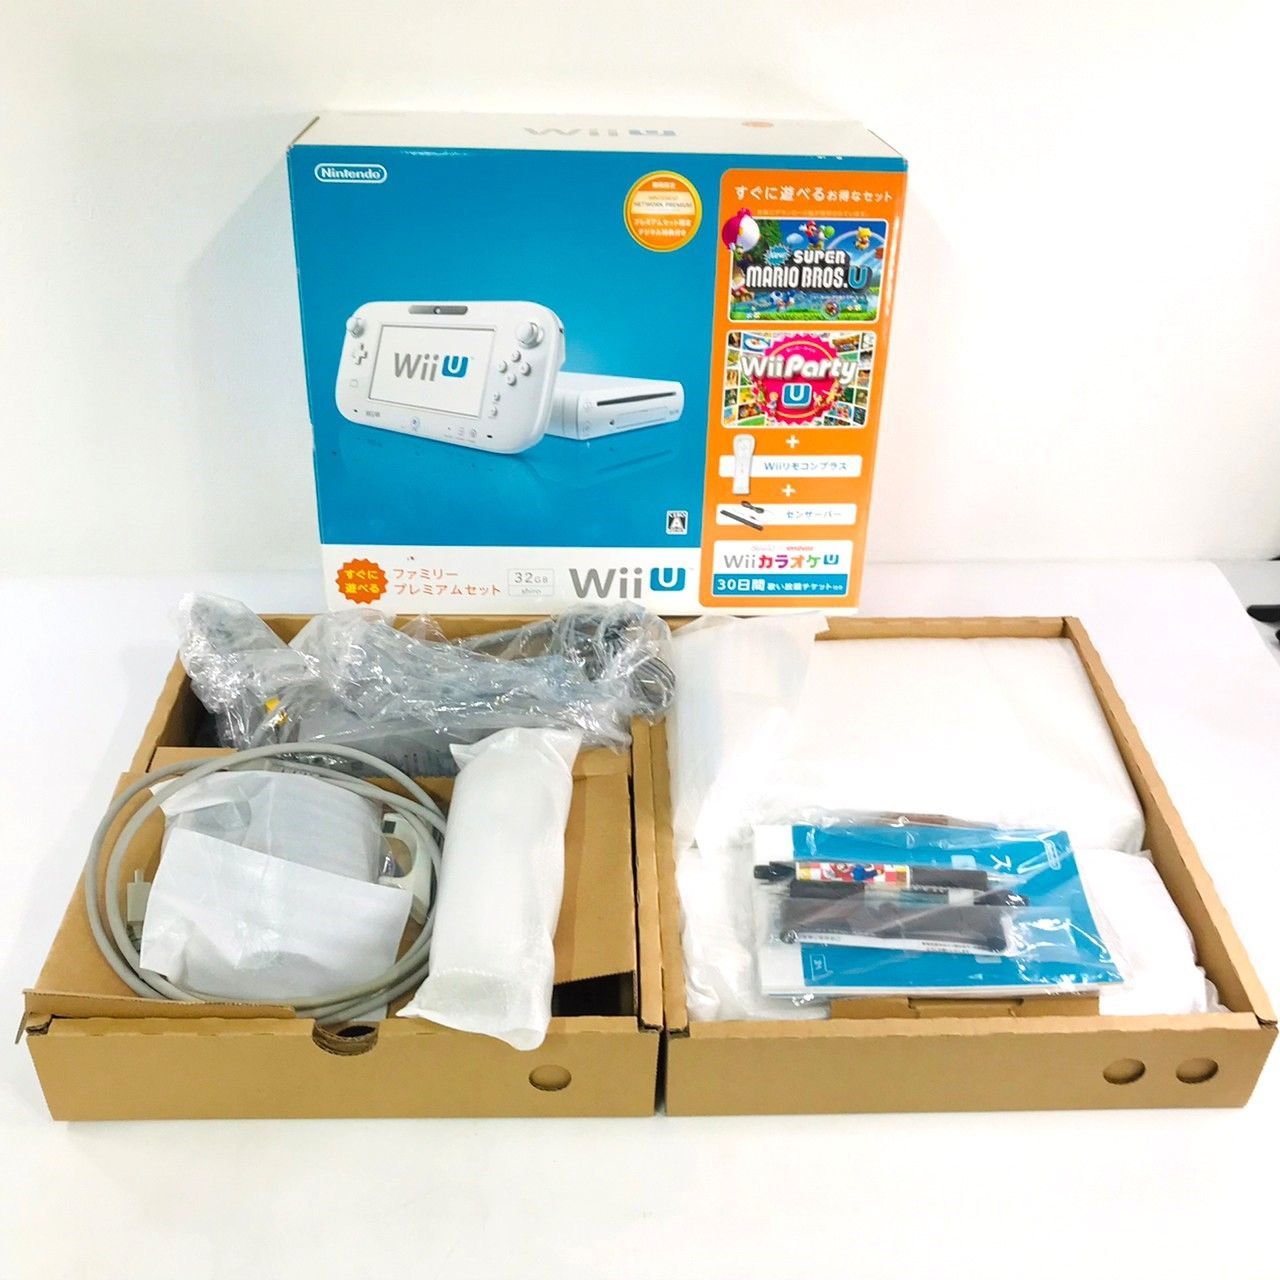 任天堂 Wii U ファミリー プレミアム セット 32GB 本体 GamePad